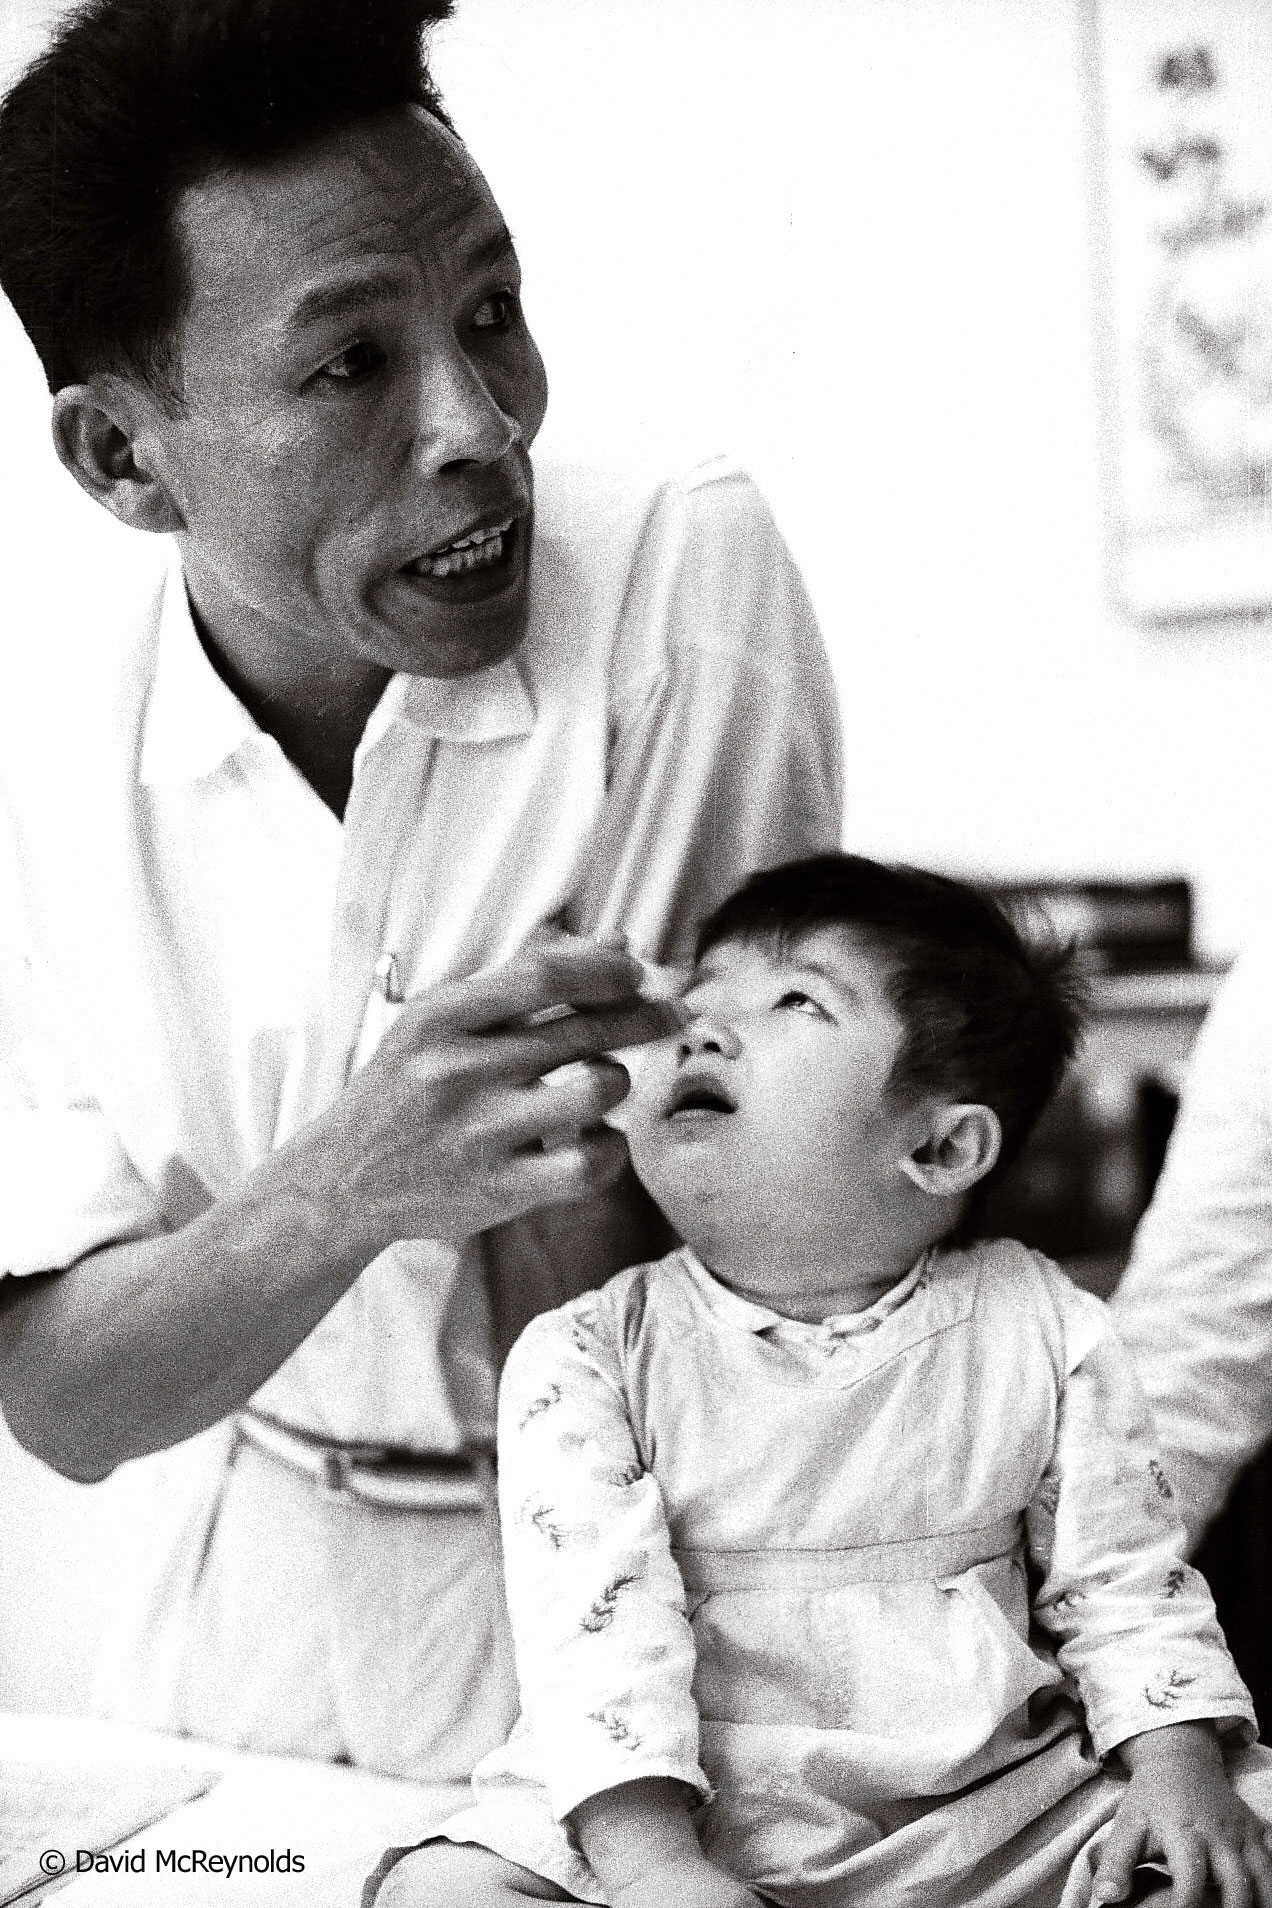  Child deformed by agent orange. Hanoi, 1971. 